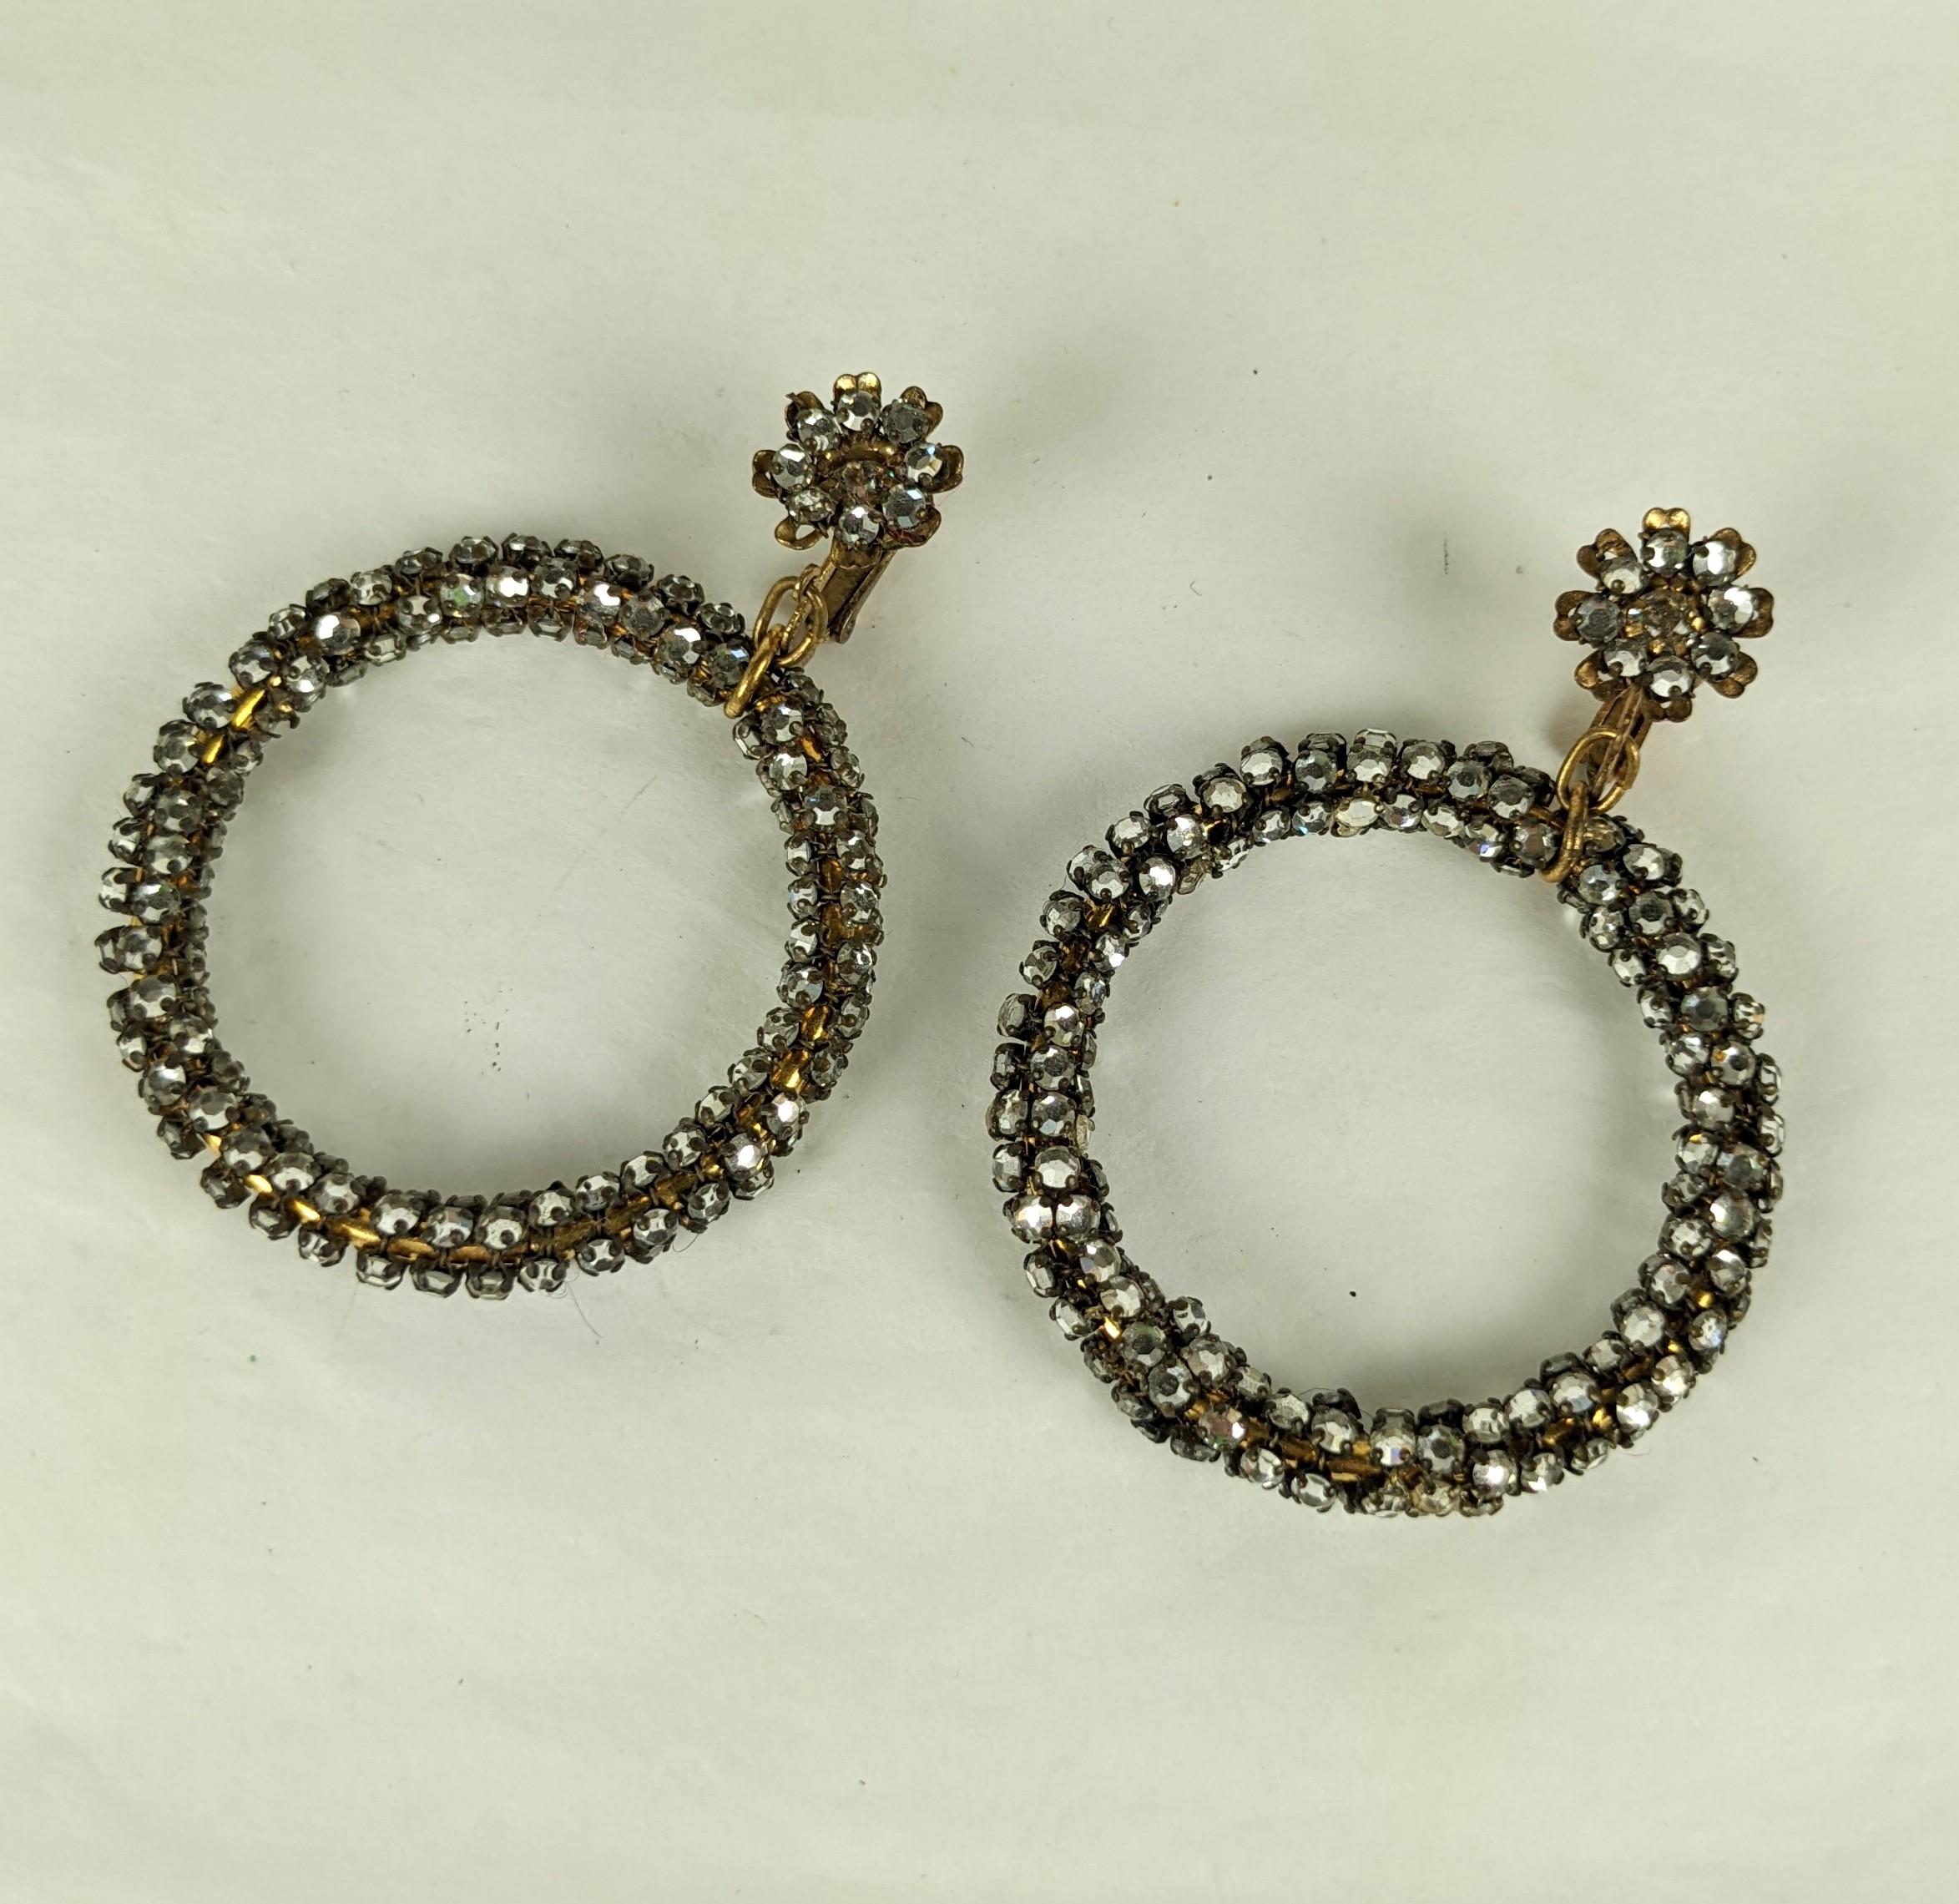 Boucles d'oreilles Miriam Haskell Rose Montee des années 1950, avec fermoir à clip. Les anneaux et le sommet de la fleur sont entièrement recouverts de cristaux rose montee cousus à la main. 2.5